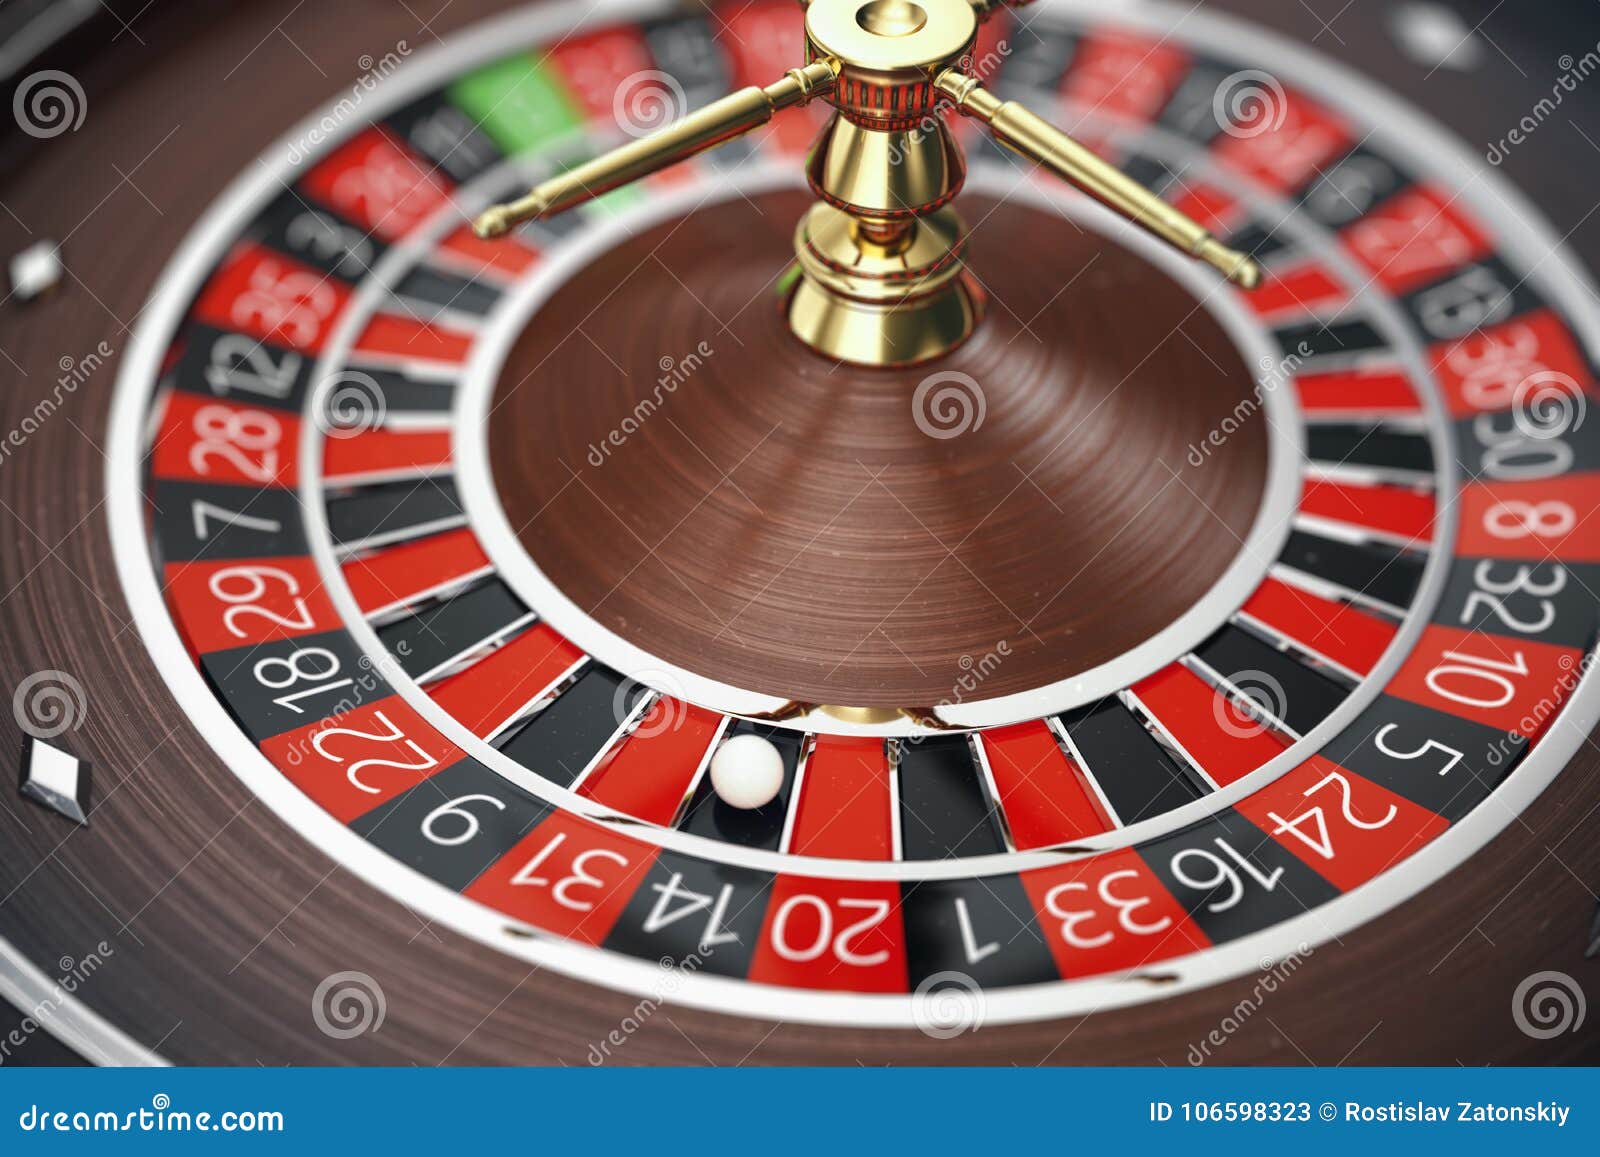 lær spillereglene i roulette : Tilbake til det grunnleggende